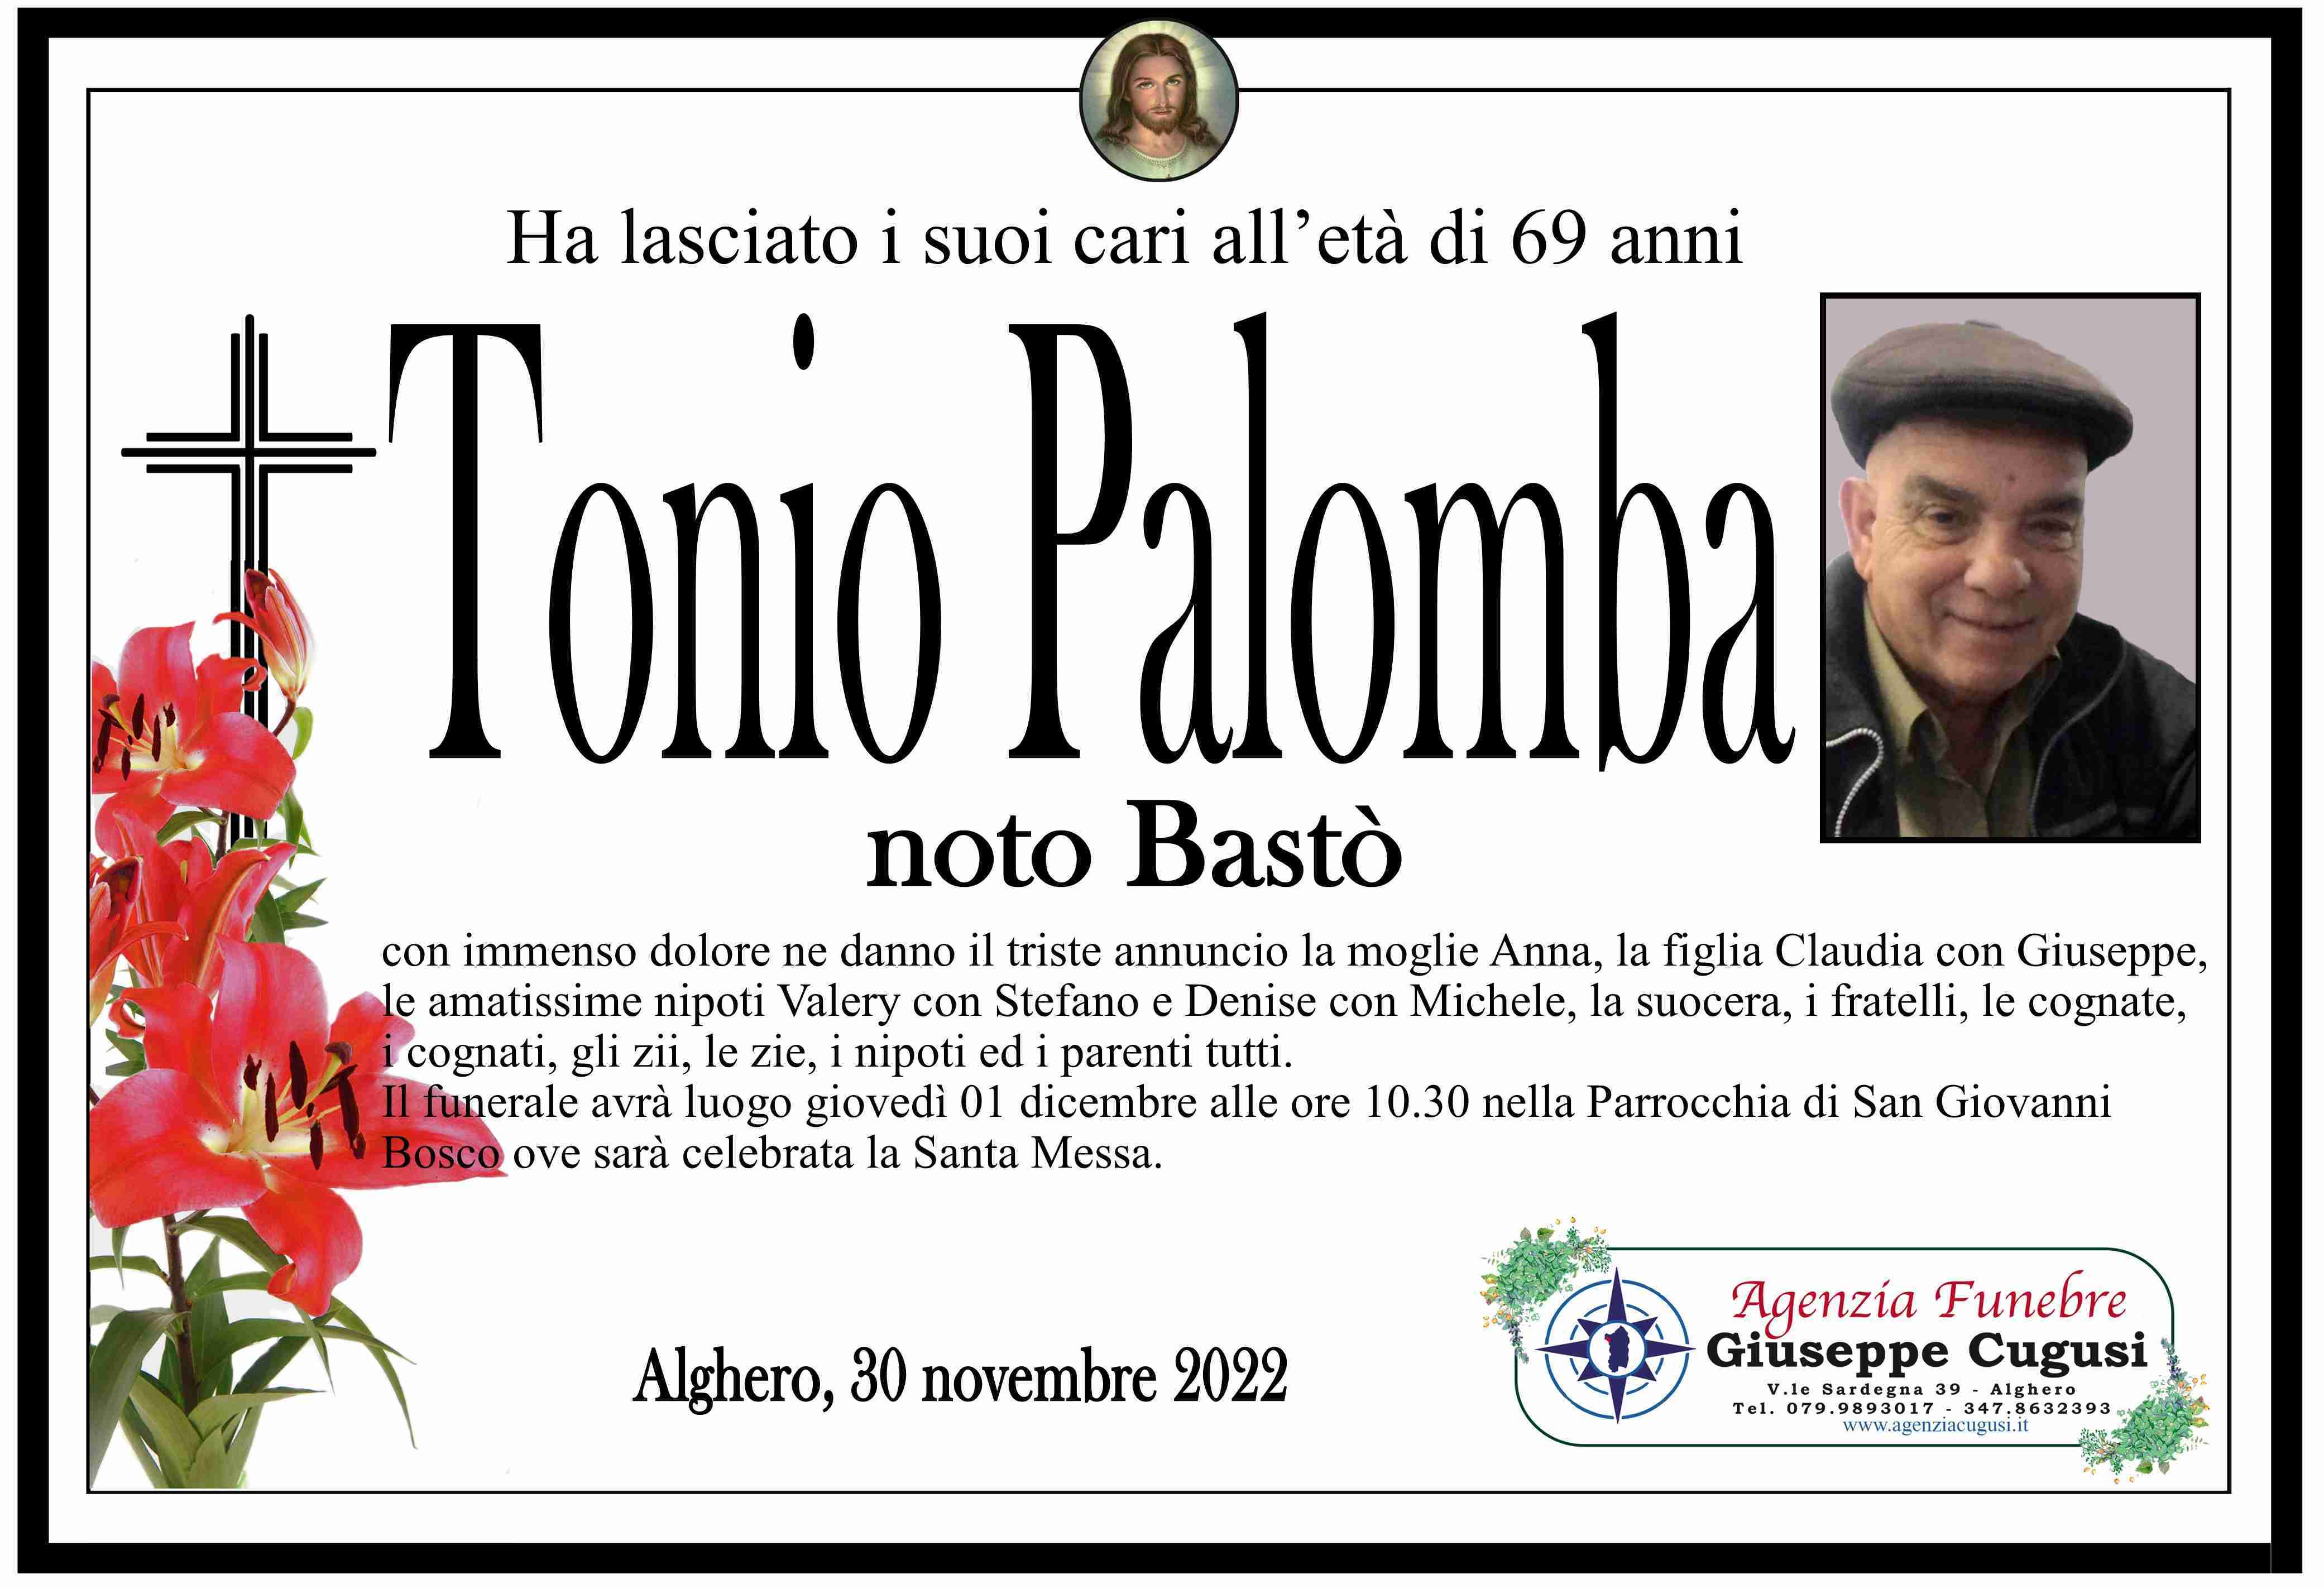 Tonio Palomba